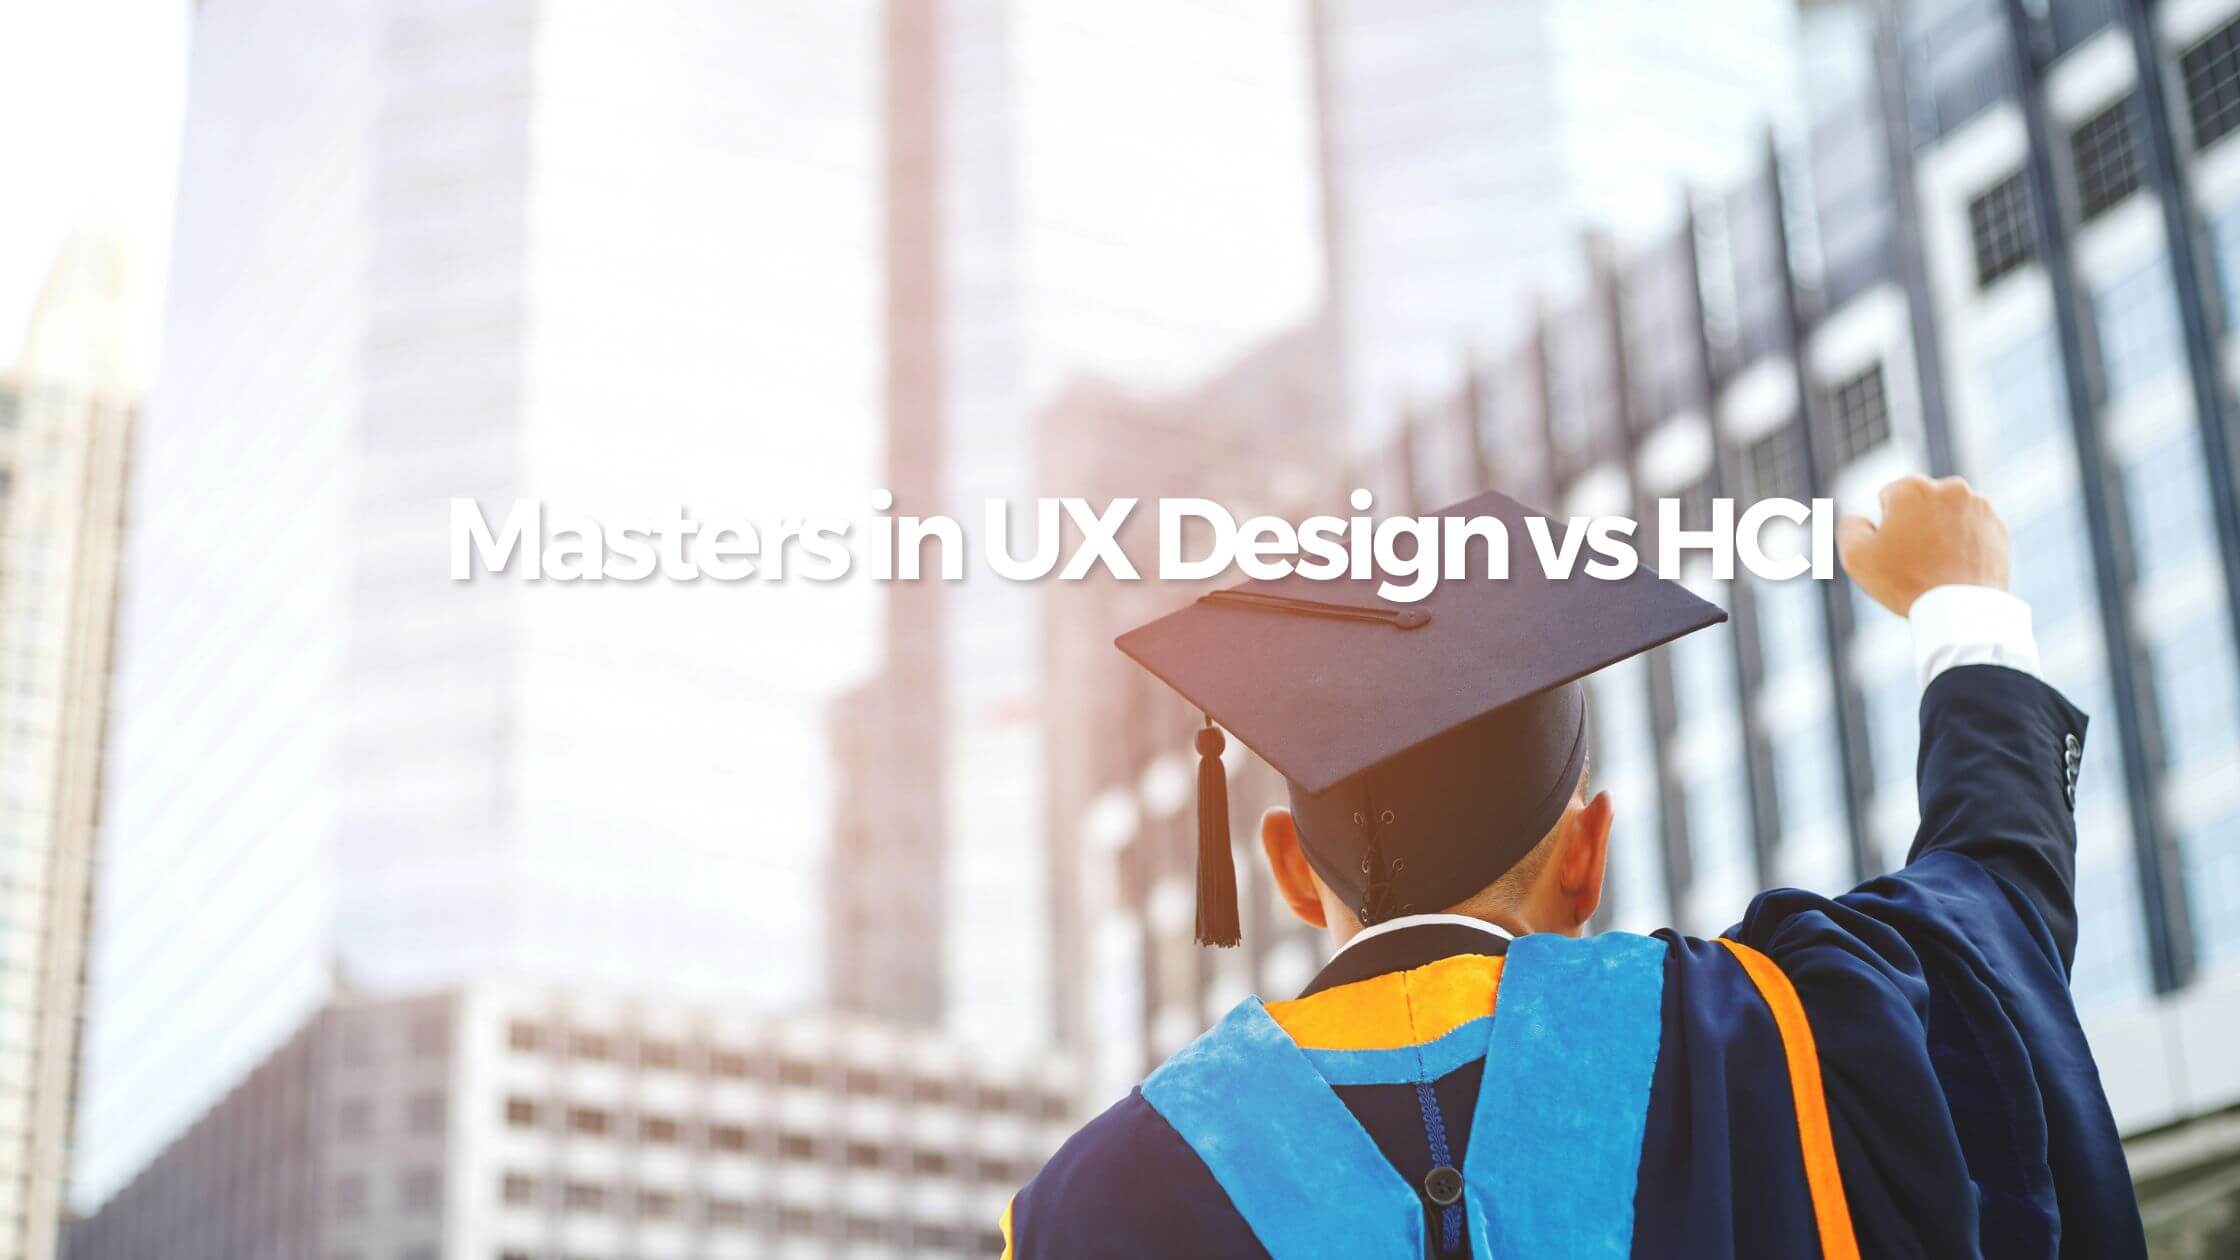 Masters in UX Design vs HCI